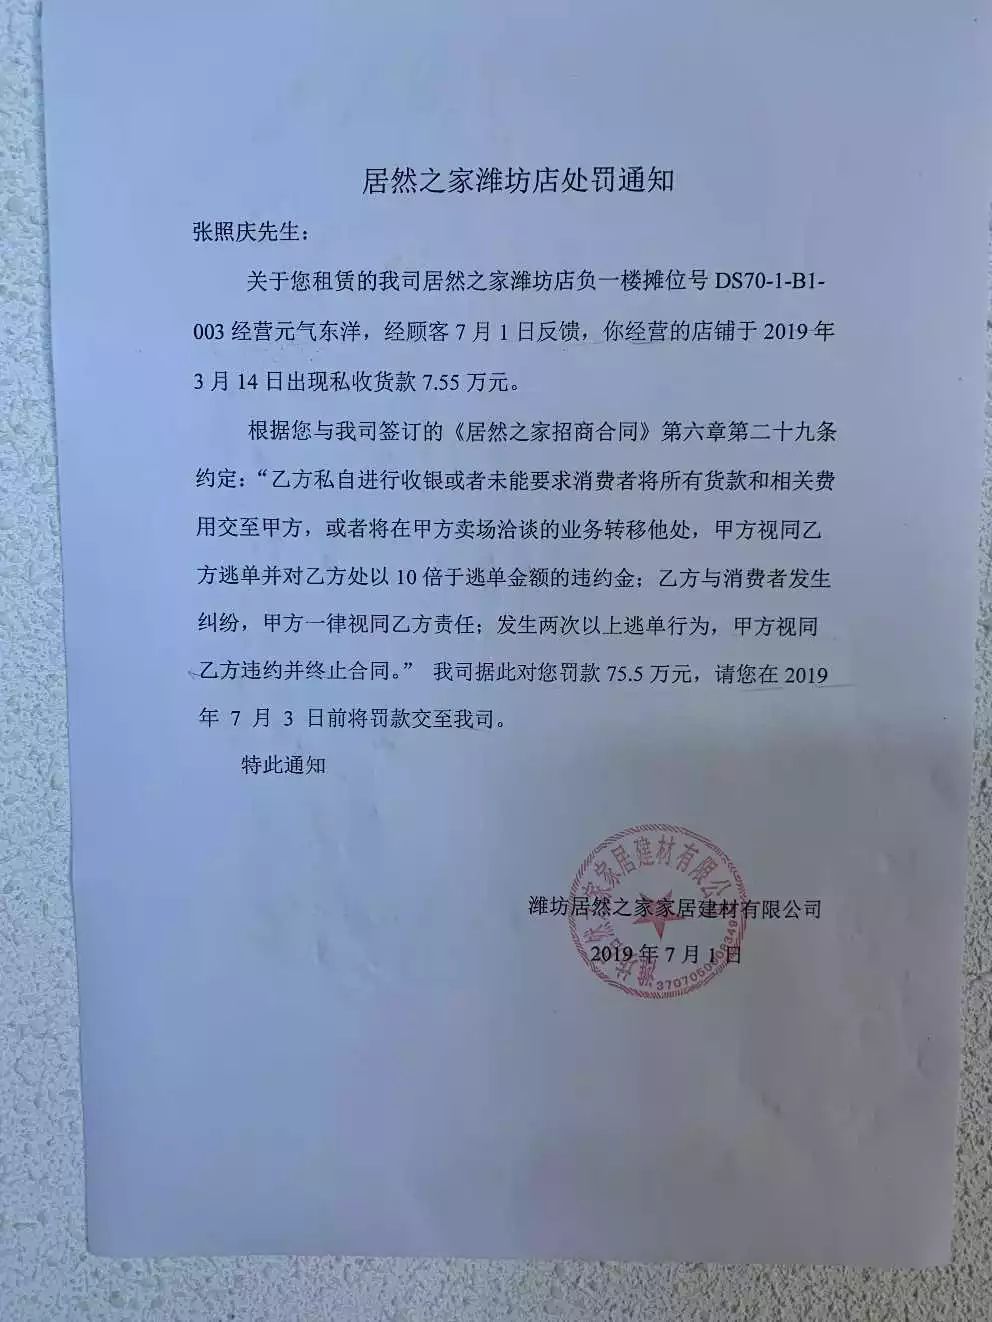 真牛被消费者投诉居然之家拒收潍坊市消协两次发函